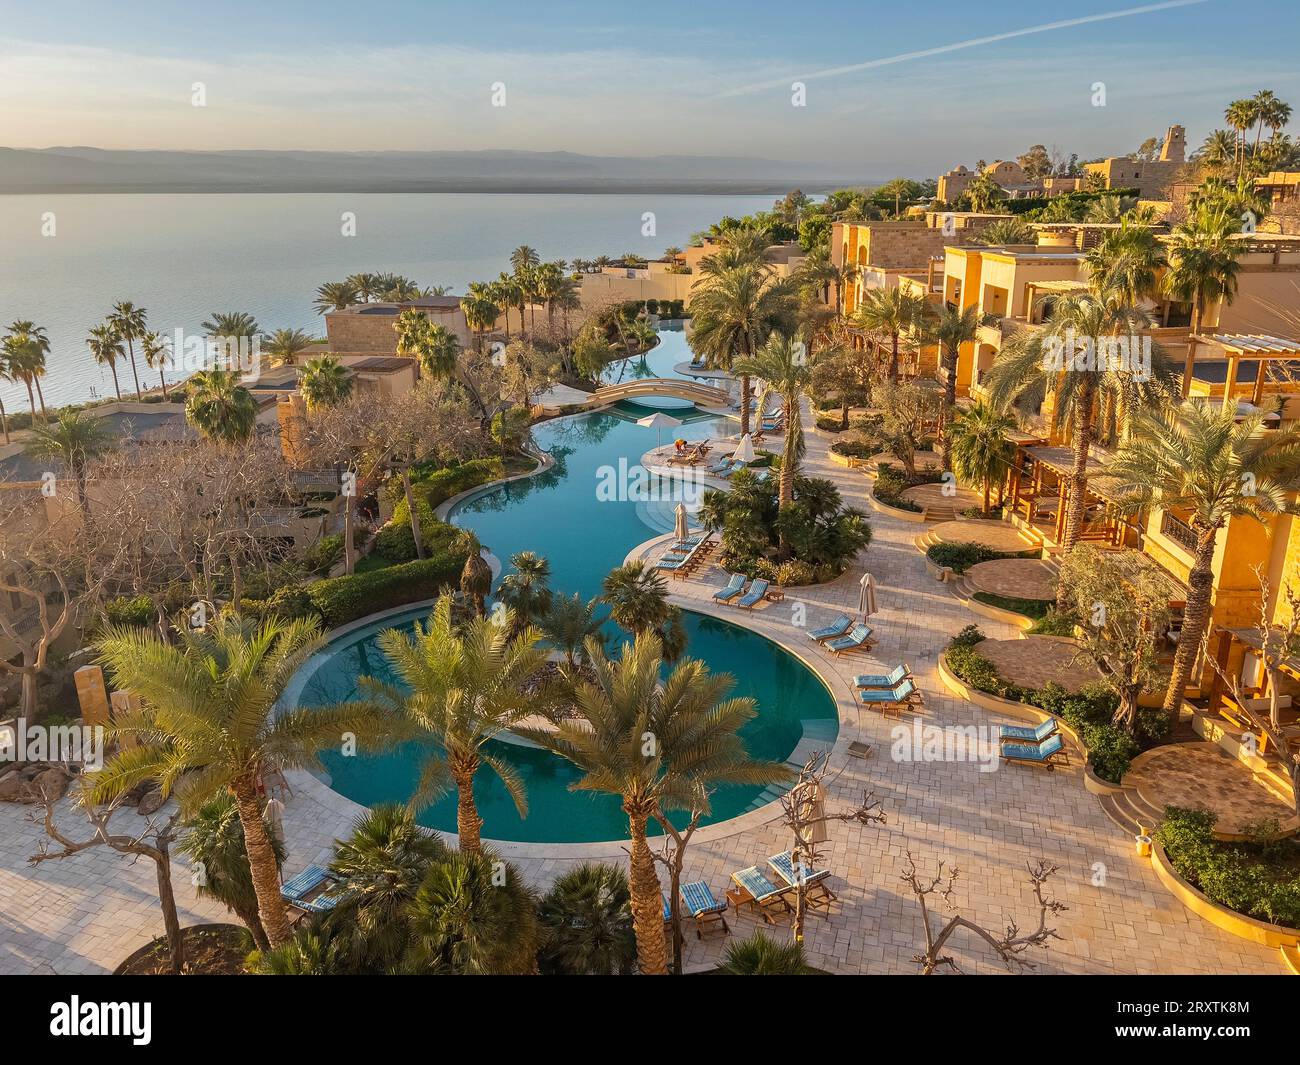 Coucher de soleil au Kempinski Hotel Ishtar, un complexe cinq étoiles de luxe au bord de la mer Morte inspiré des jardins suspendus de Babylone, Jordanie, Moyen-Orient Banque D'Images